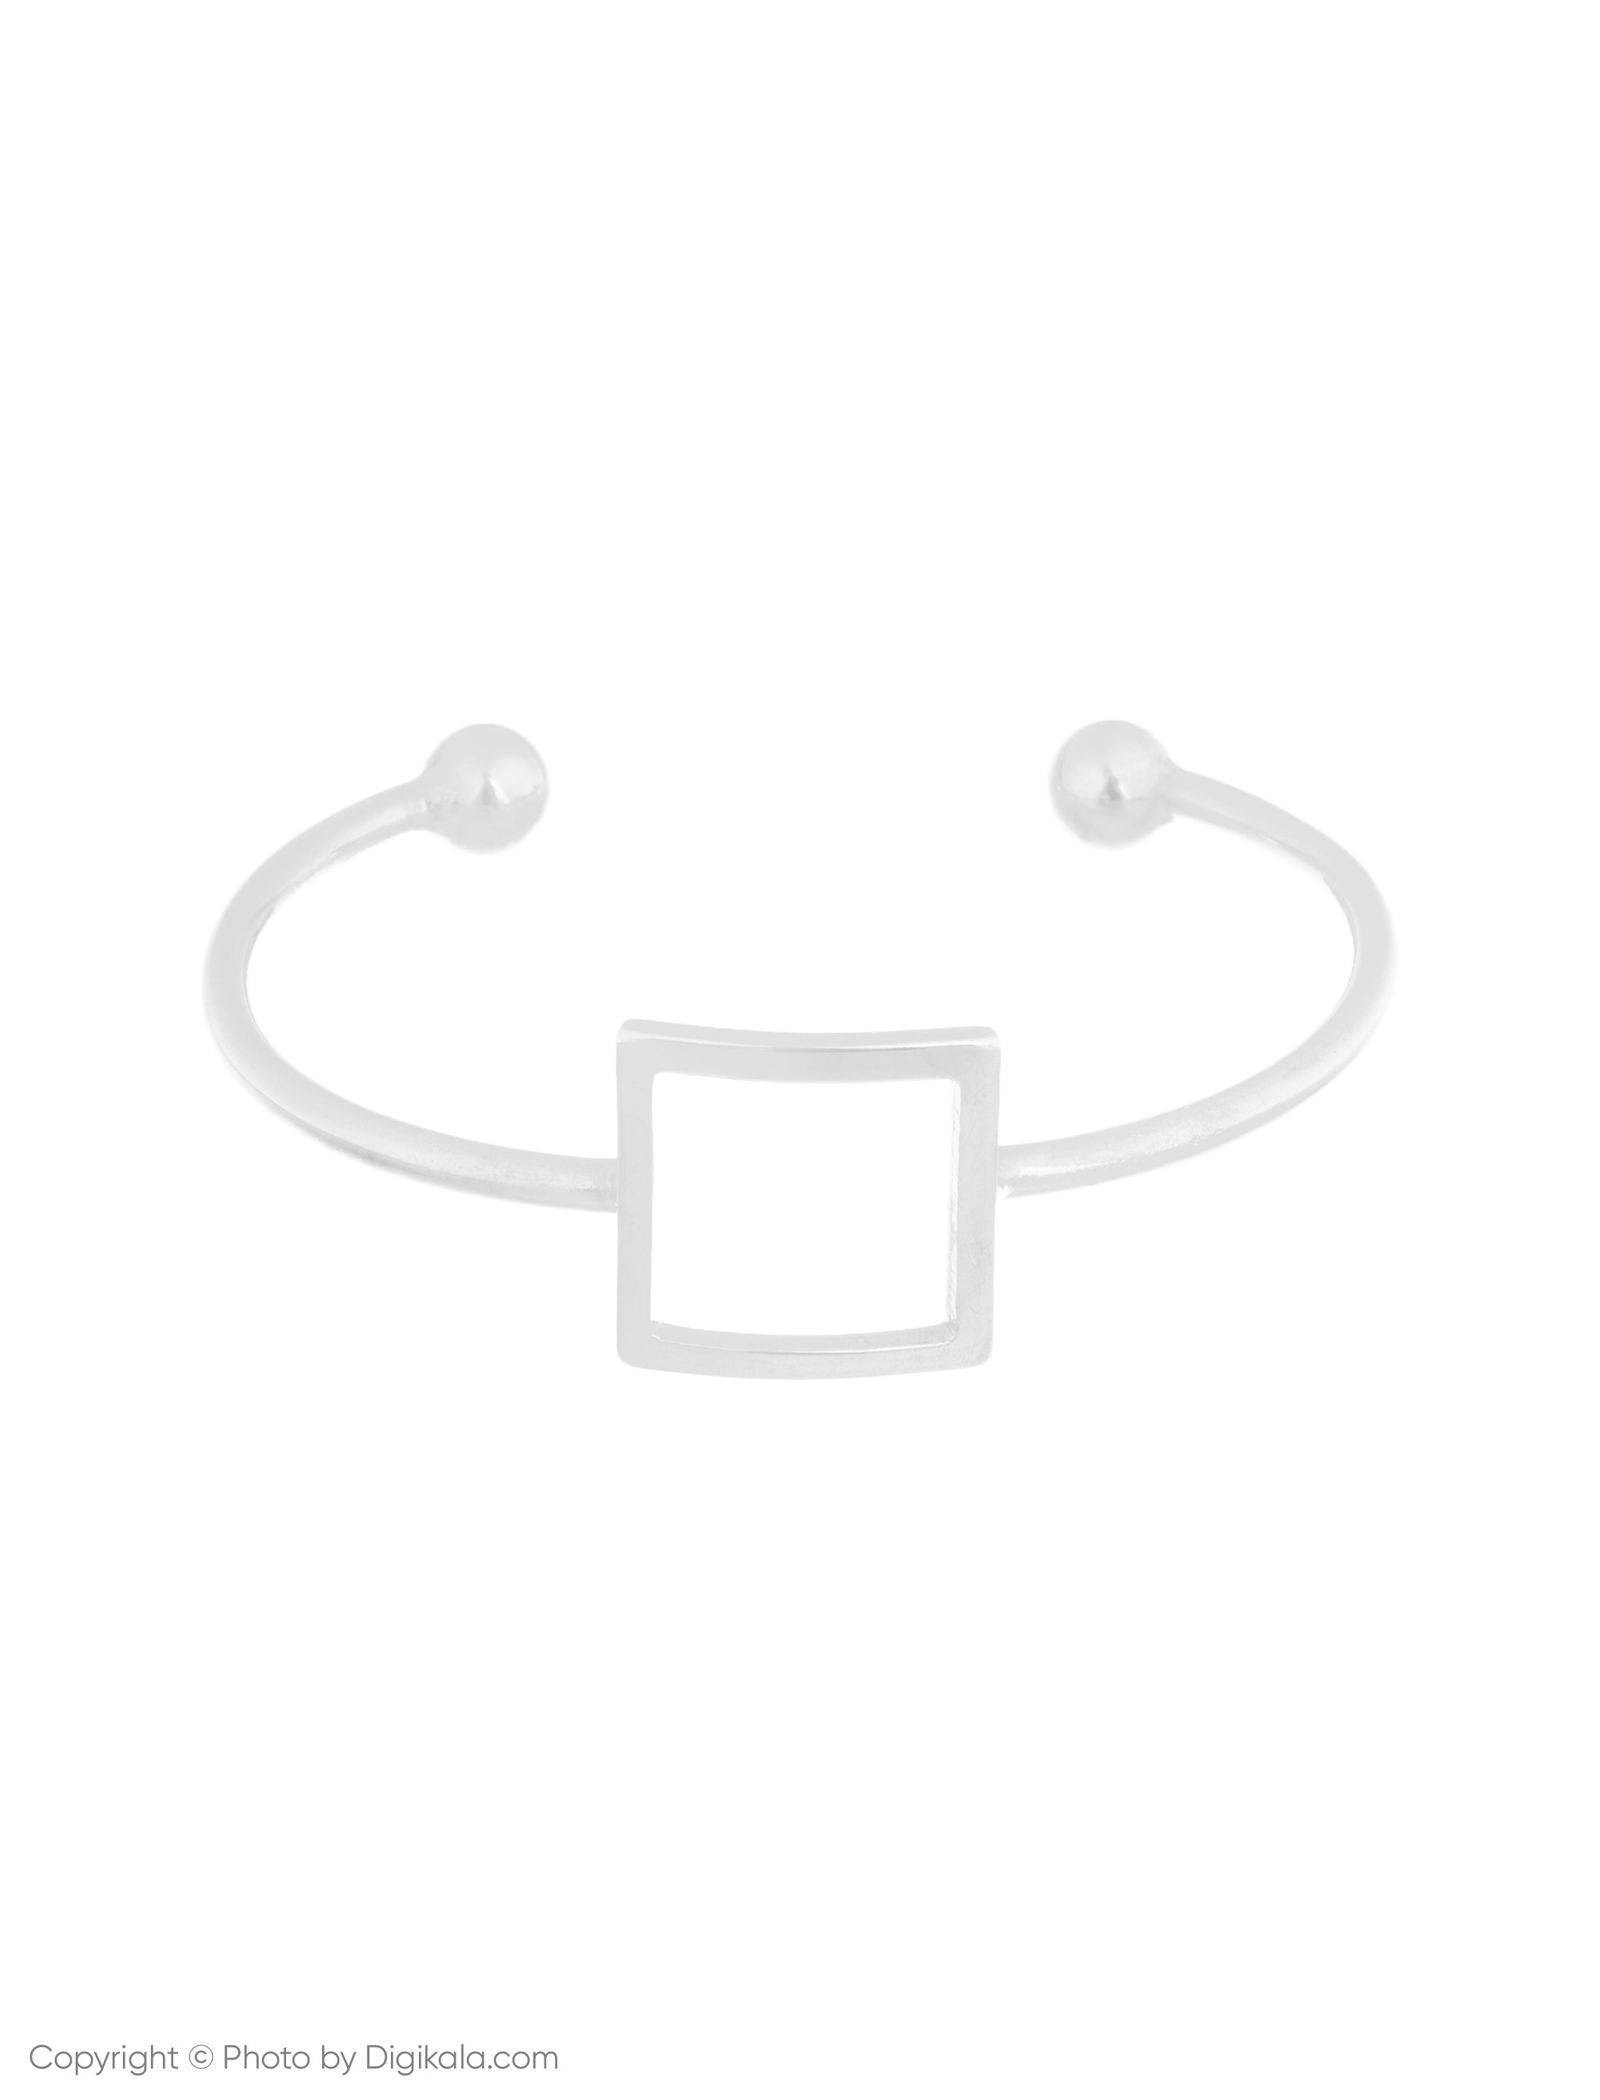 دستبند النگویی زنانه اسپرینگ فیلد مدل 8459630-BROWNS بسته 3 عددی - چند رنگ - 3